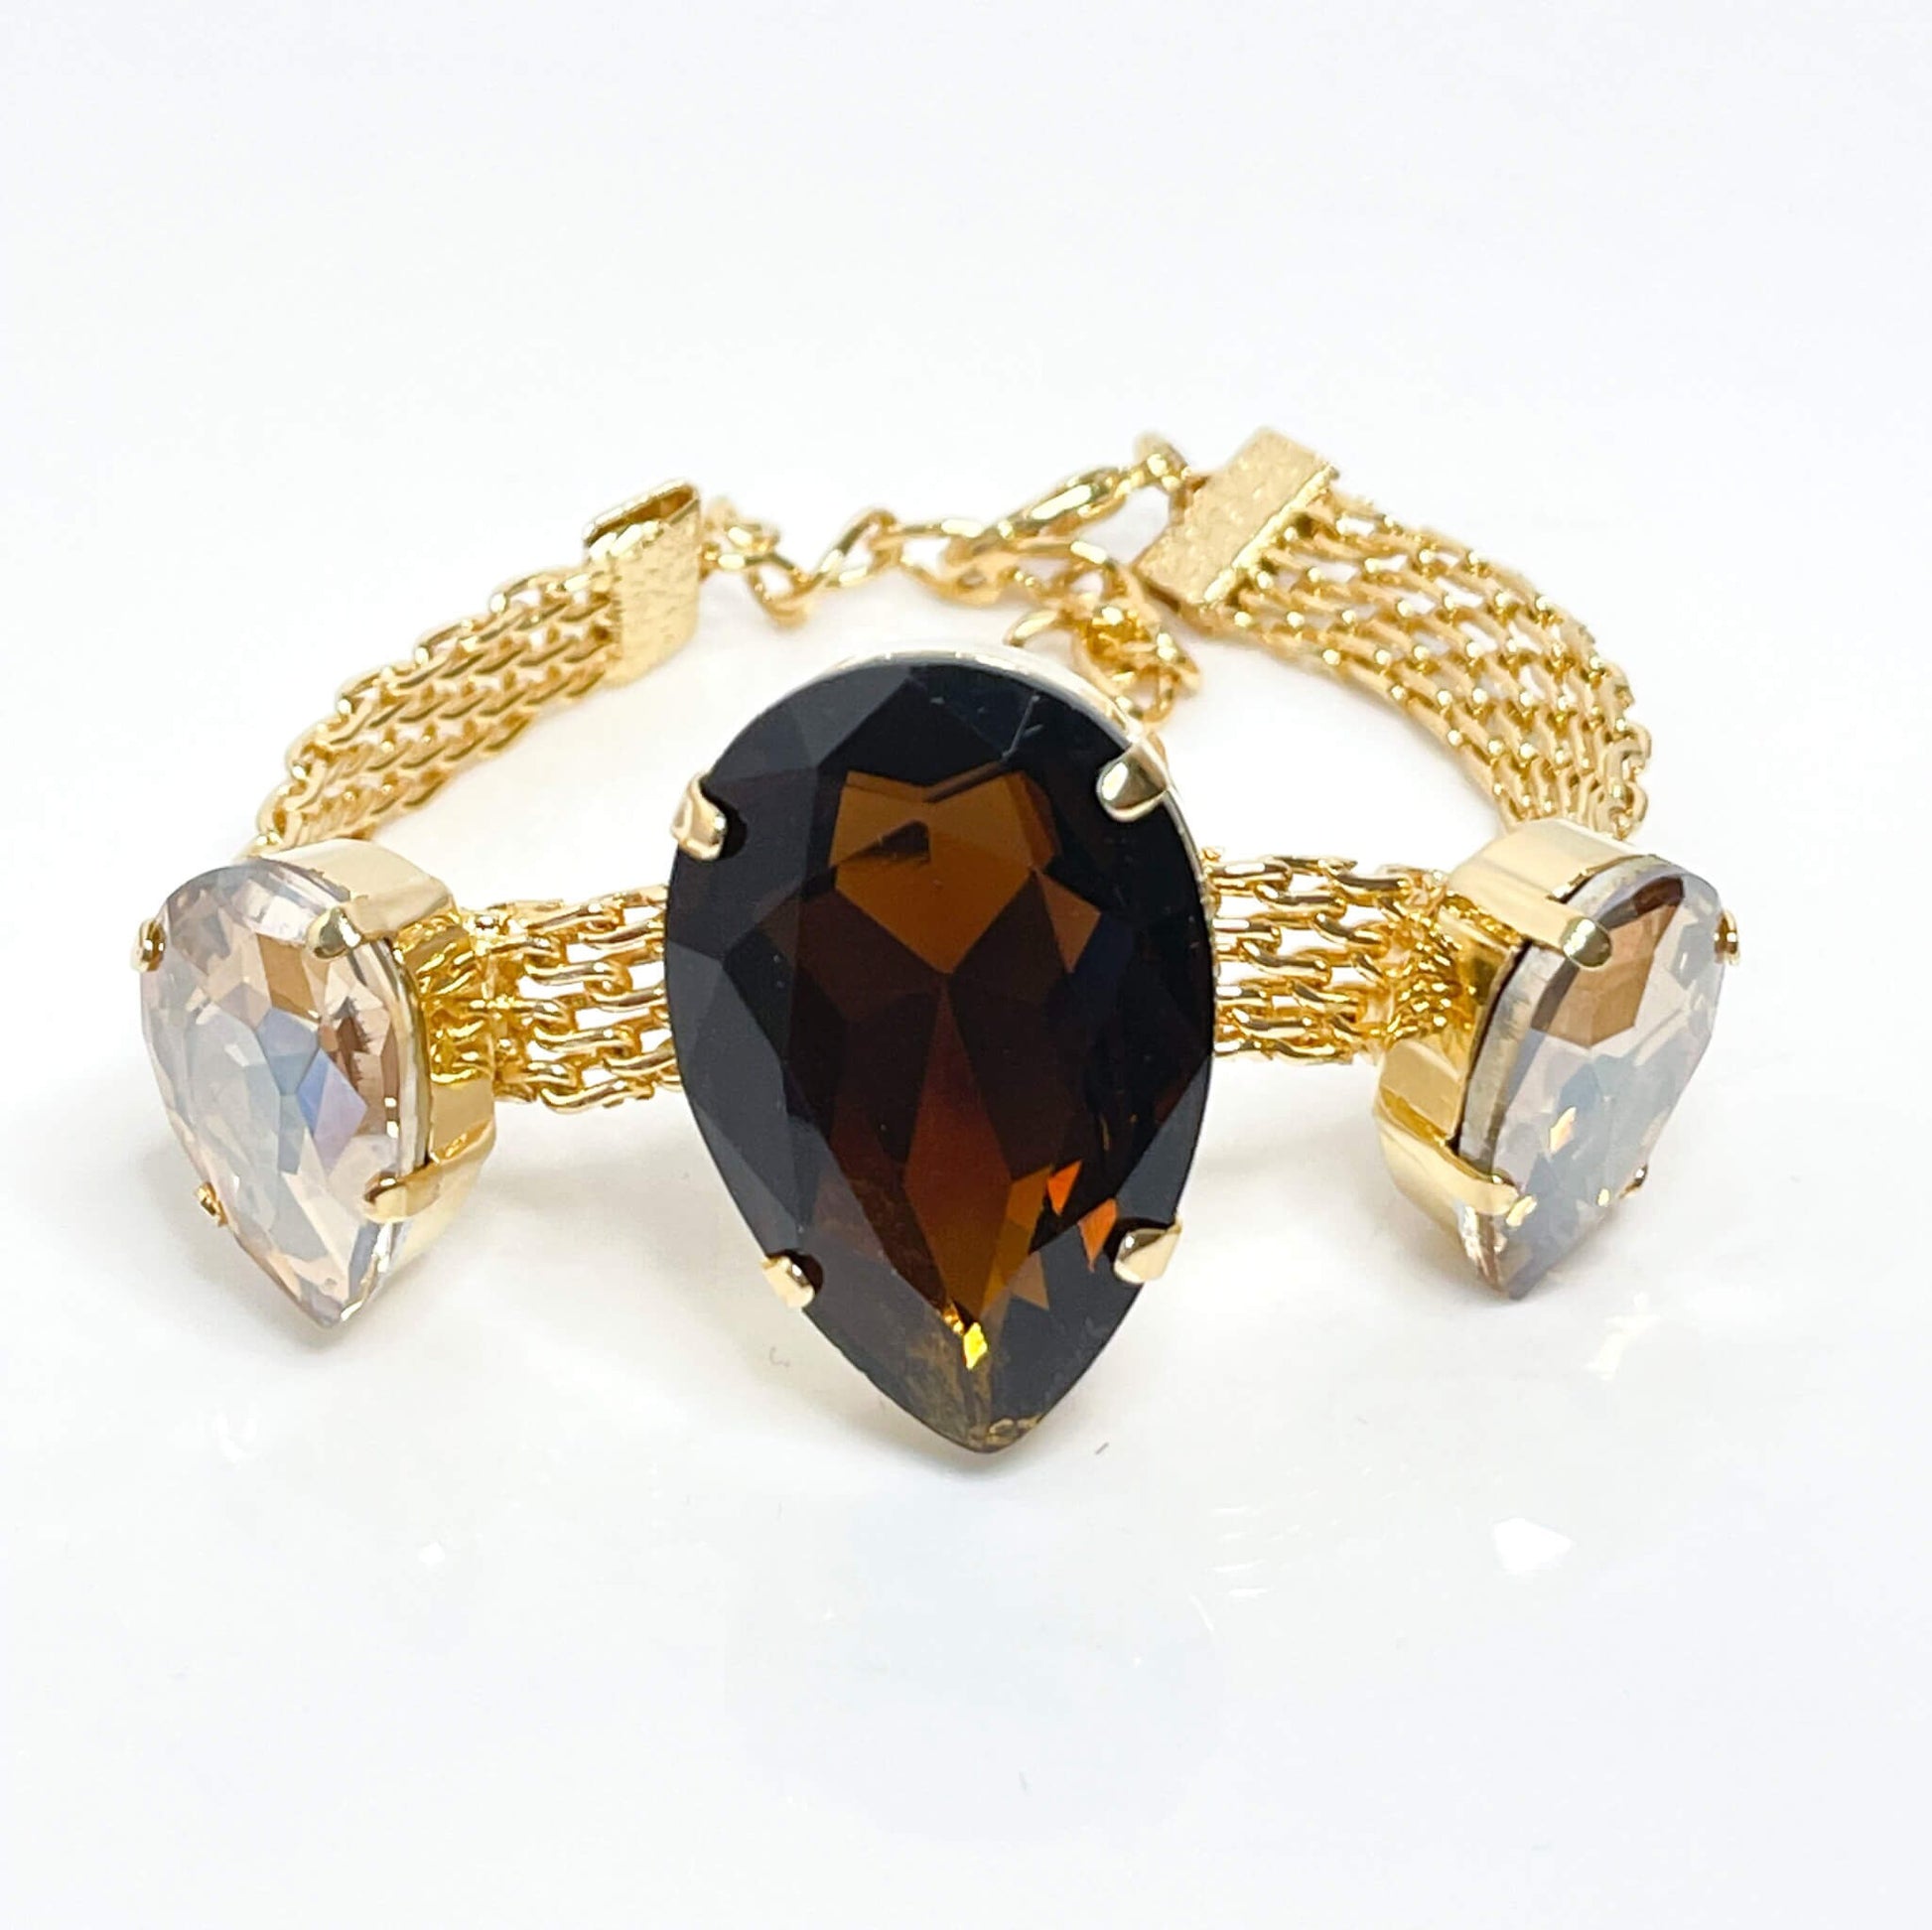 Smoked Topaz Crystal Gold Mesh Bracelet, Large Teardrop Cuff, Statement Jewellery, Georgian Style Bracelet, Bracelets for Women